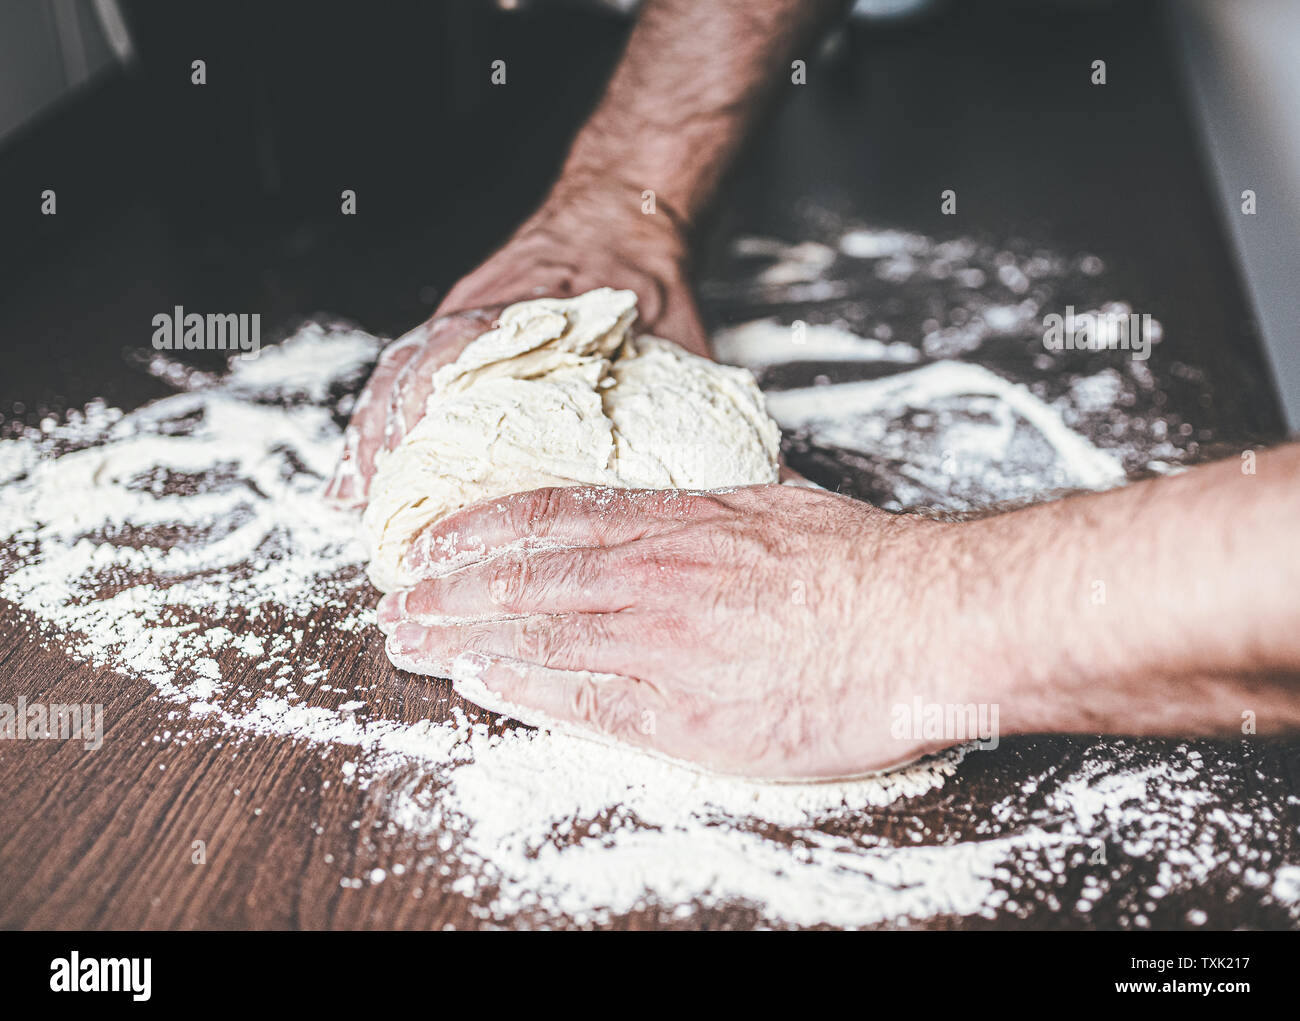 Gros plan des mains de l'homme du pétrissage de la pâte sur le plan de travail fariné Banque D'Images